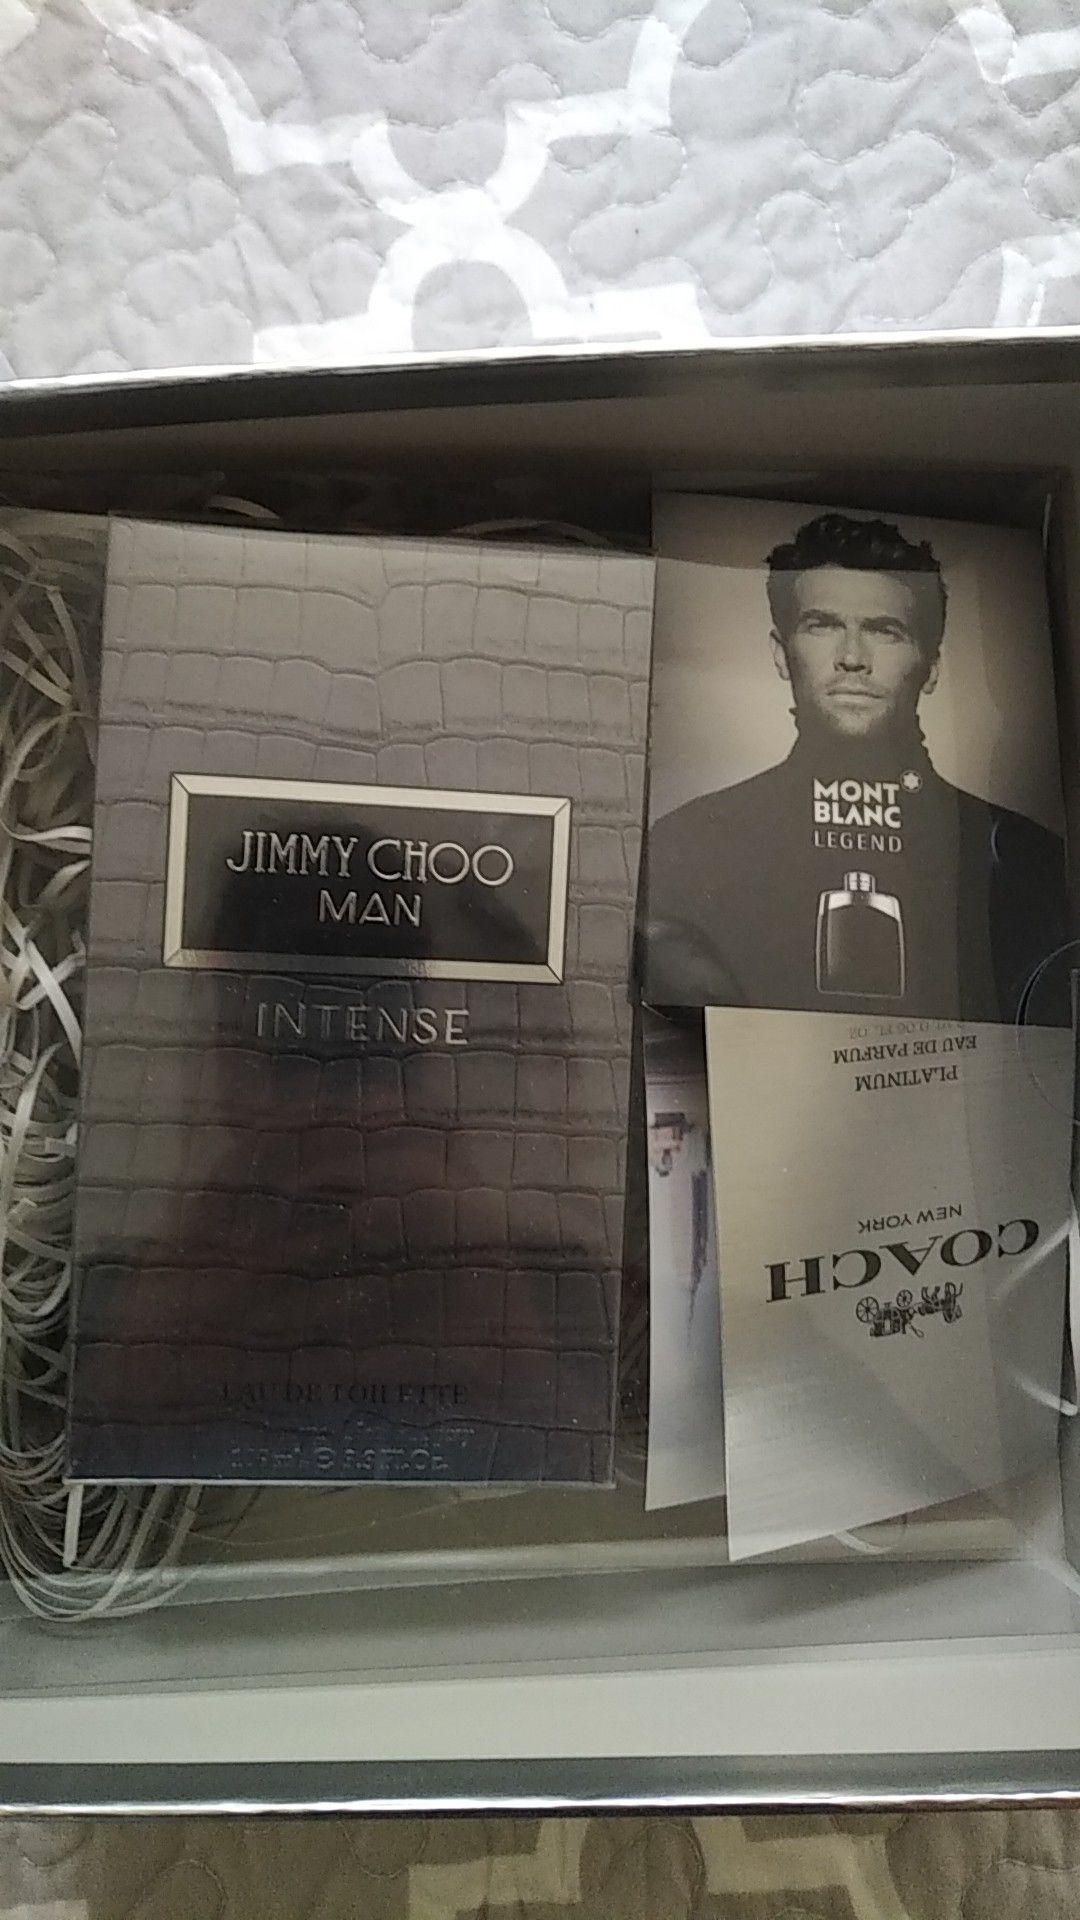 Jimmy Choo Men's fragrance